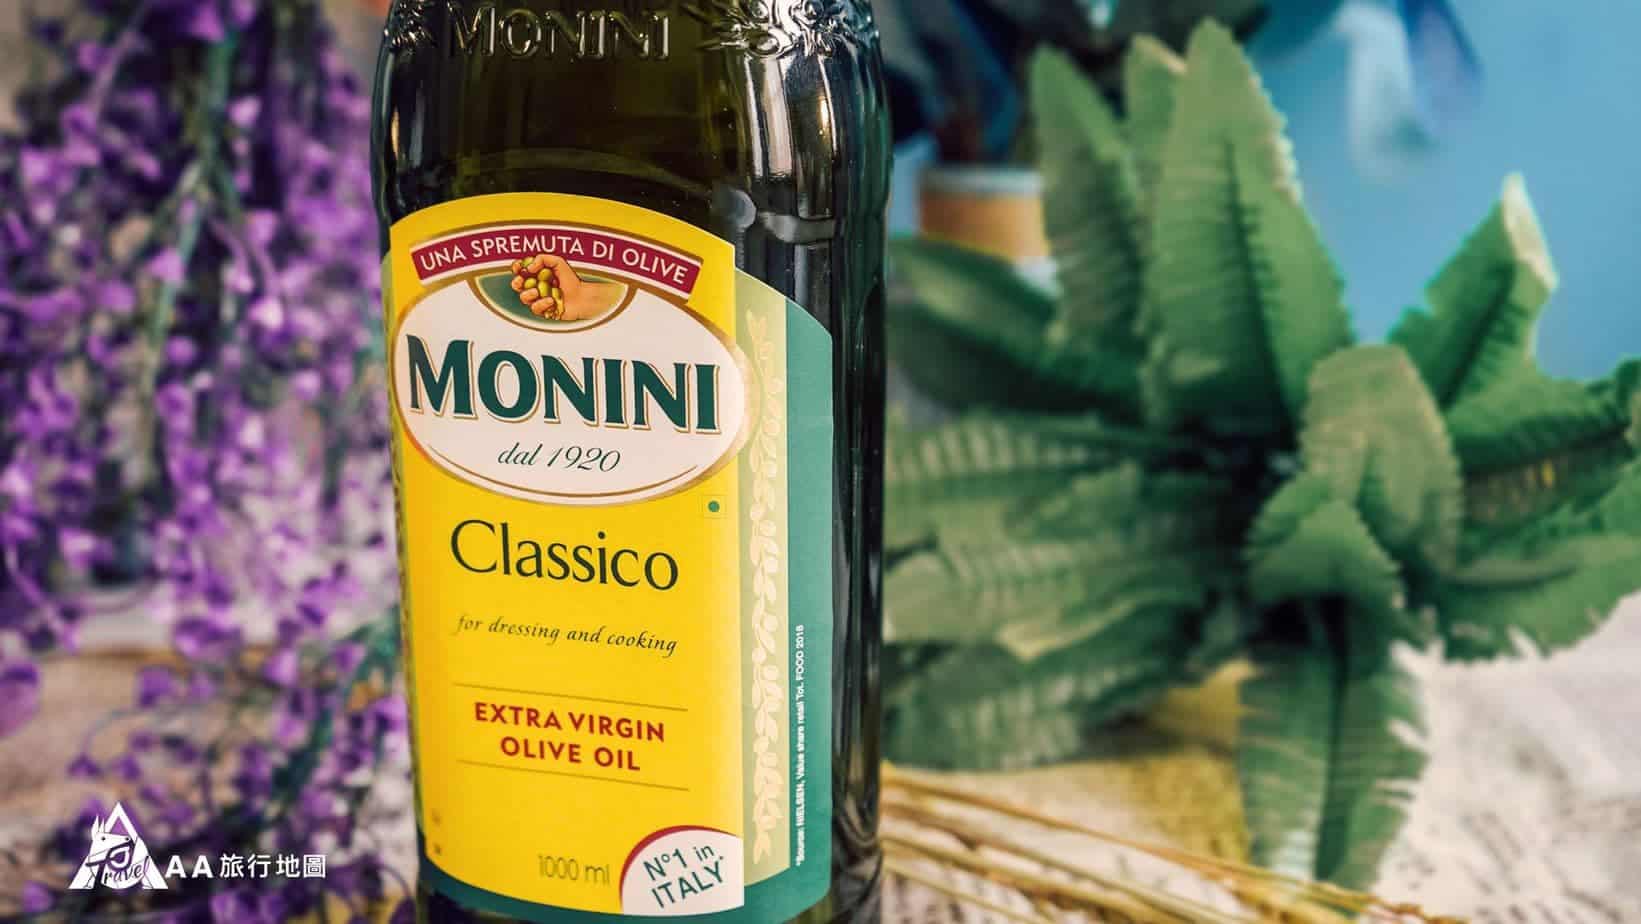 monini-採用環保包裝的外瓶